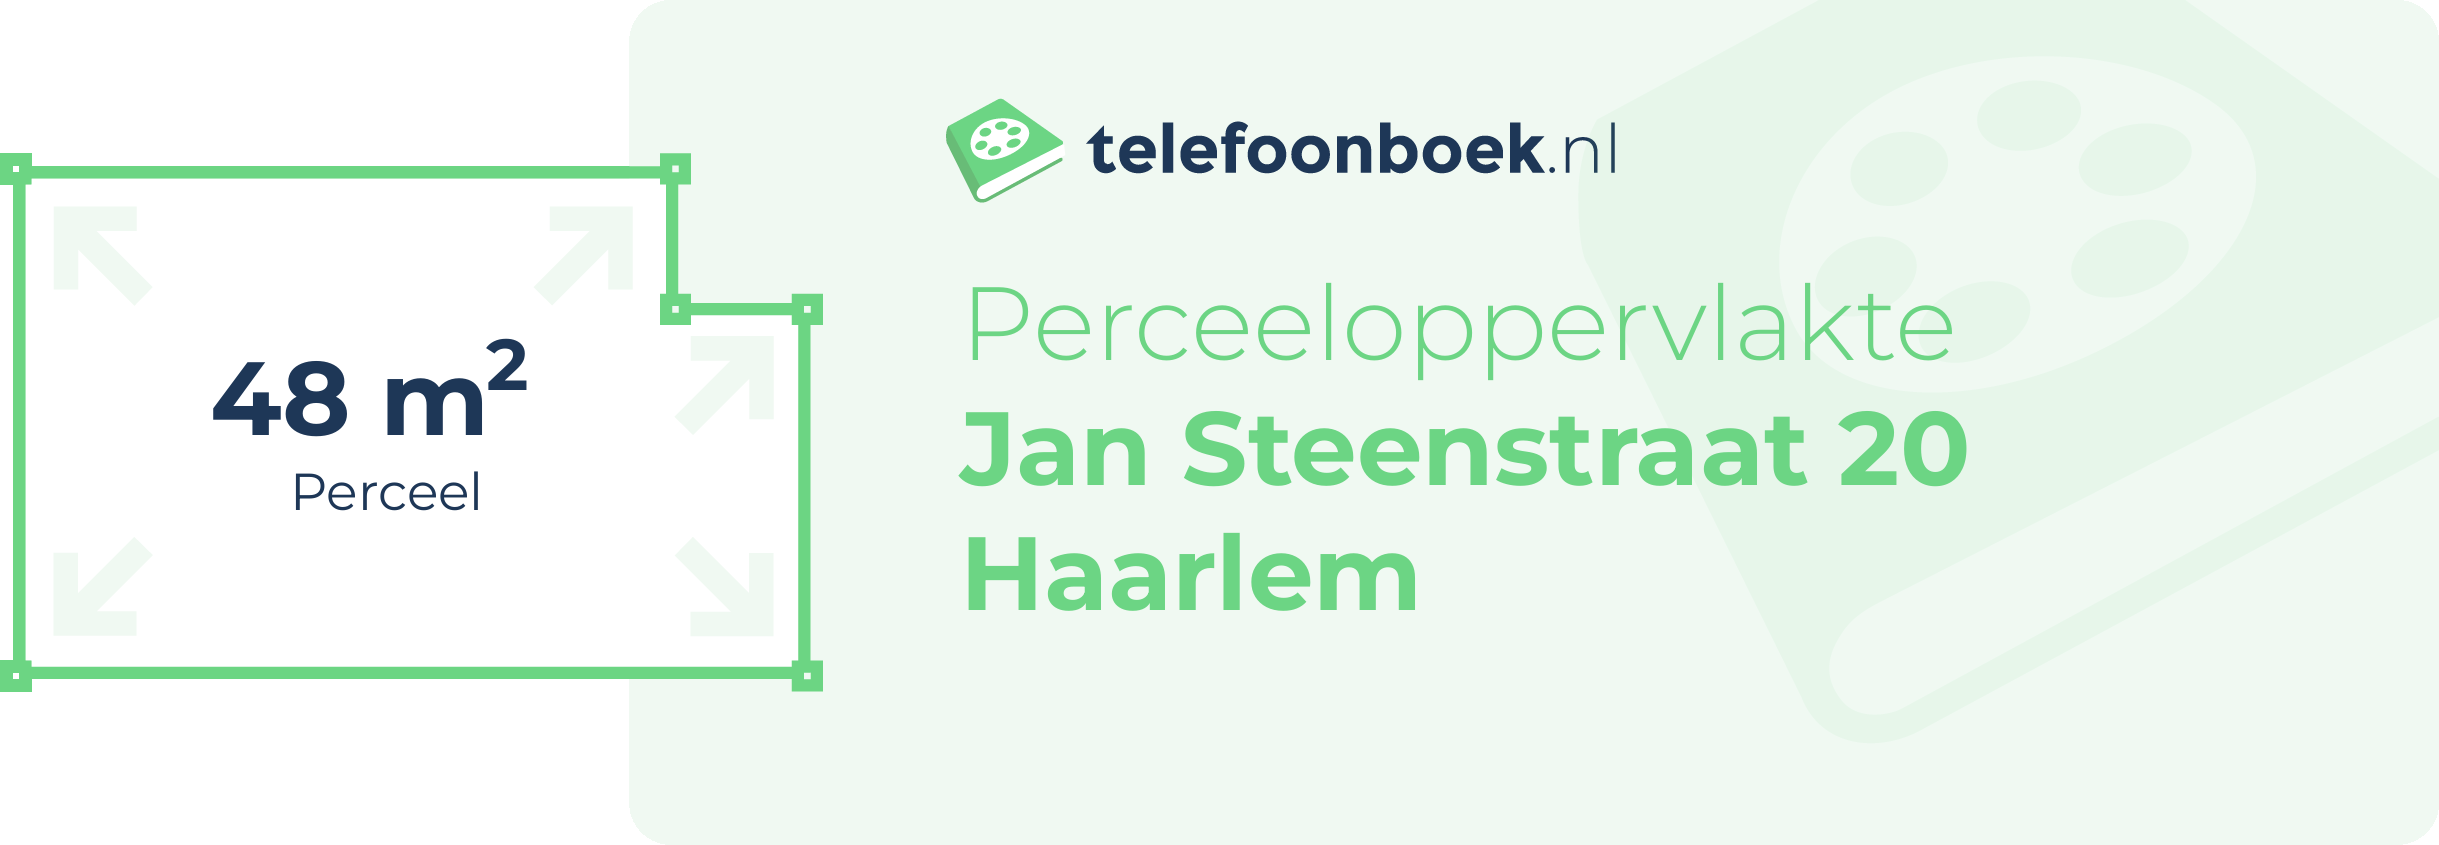 Perceeloppervlakte Jan Steenstraat 20 Haarlem